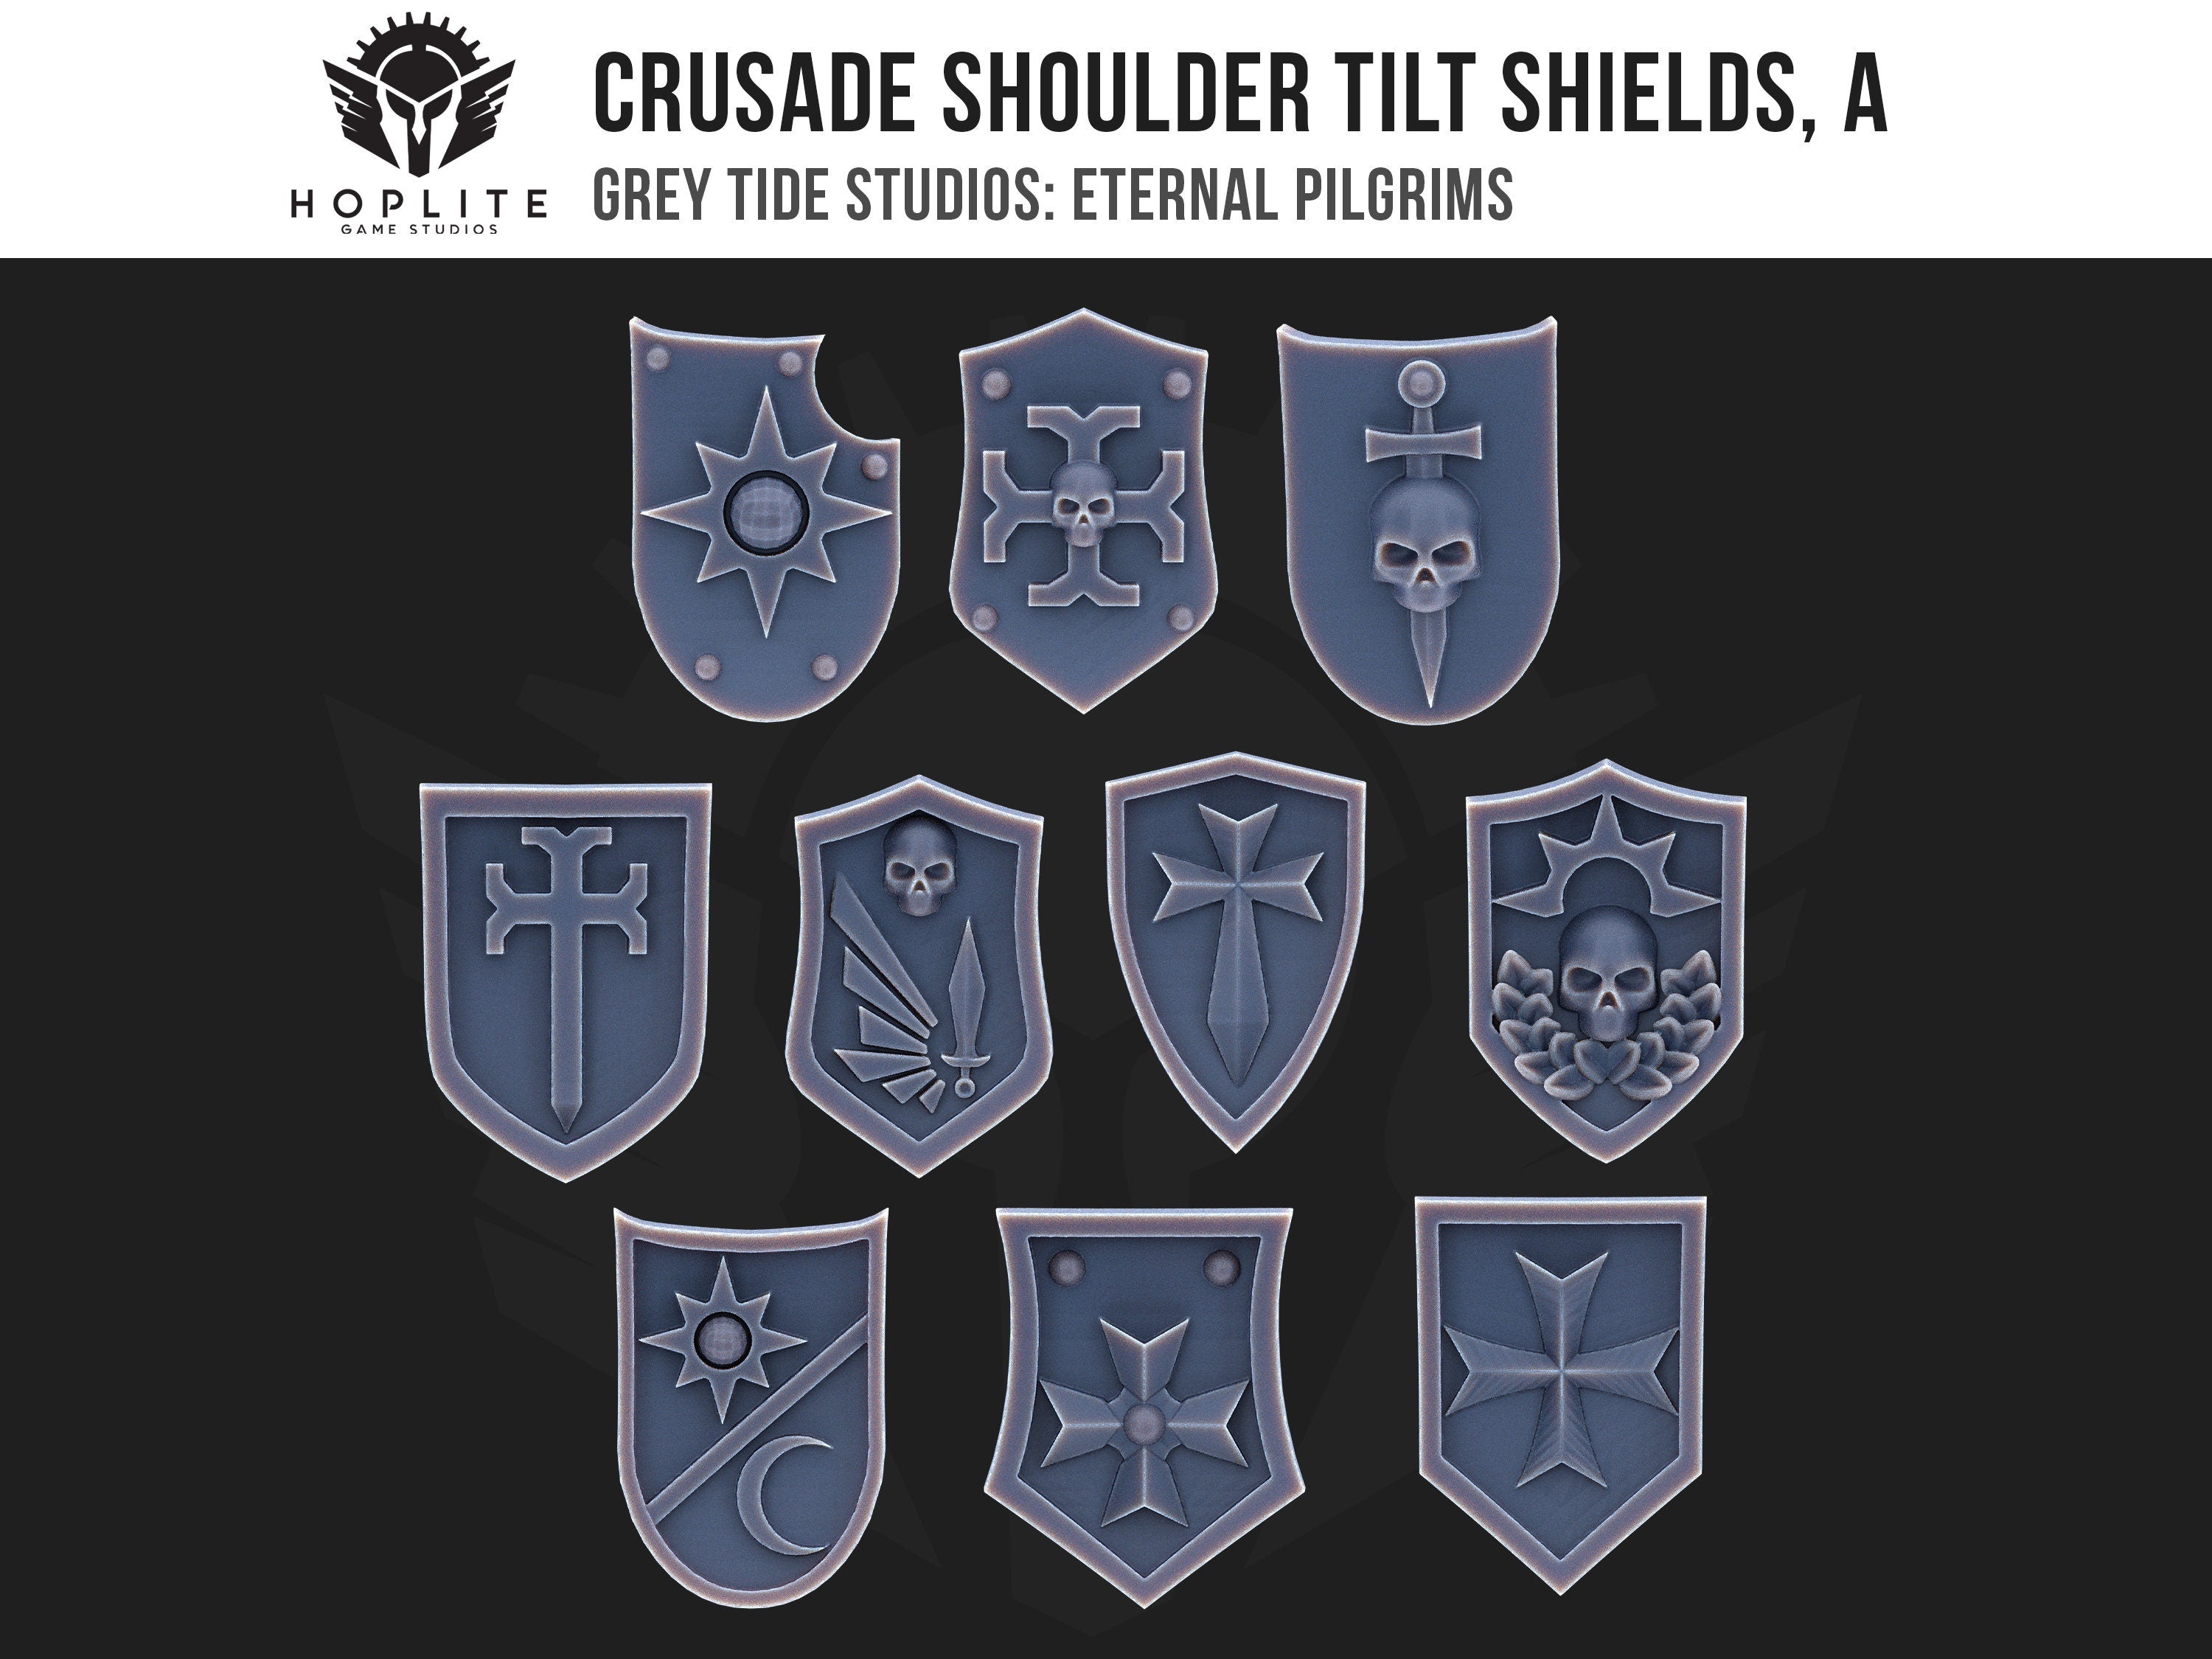 Escudos de inclinación de hombros de Cruzada, A (x10) | Estudios de marea gris | Peregrinos eternos | Piezas y brocas de conversión